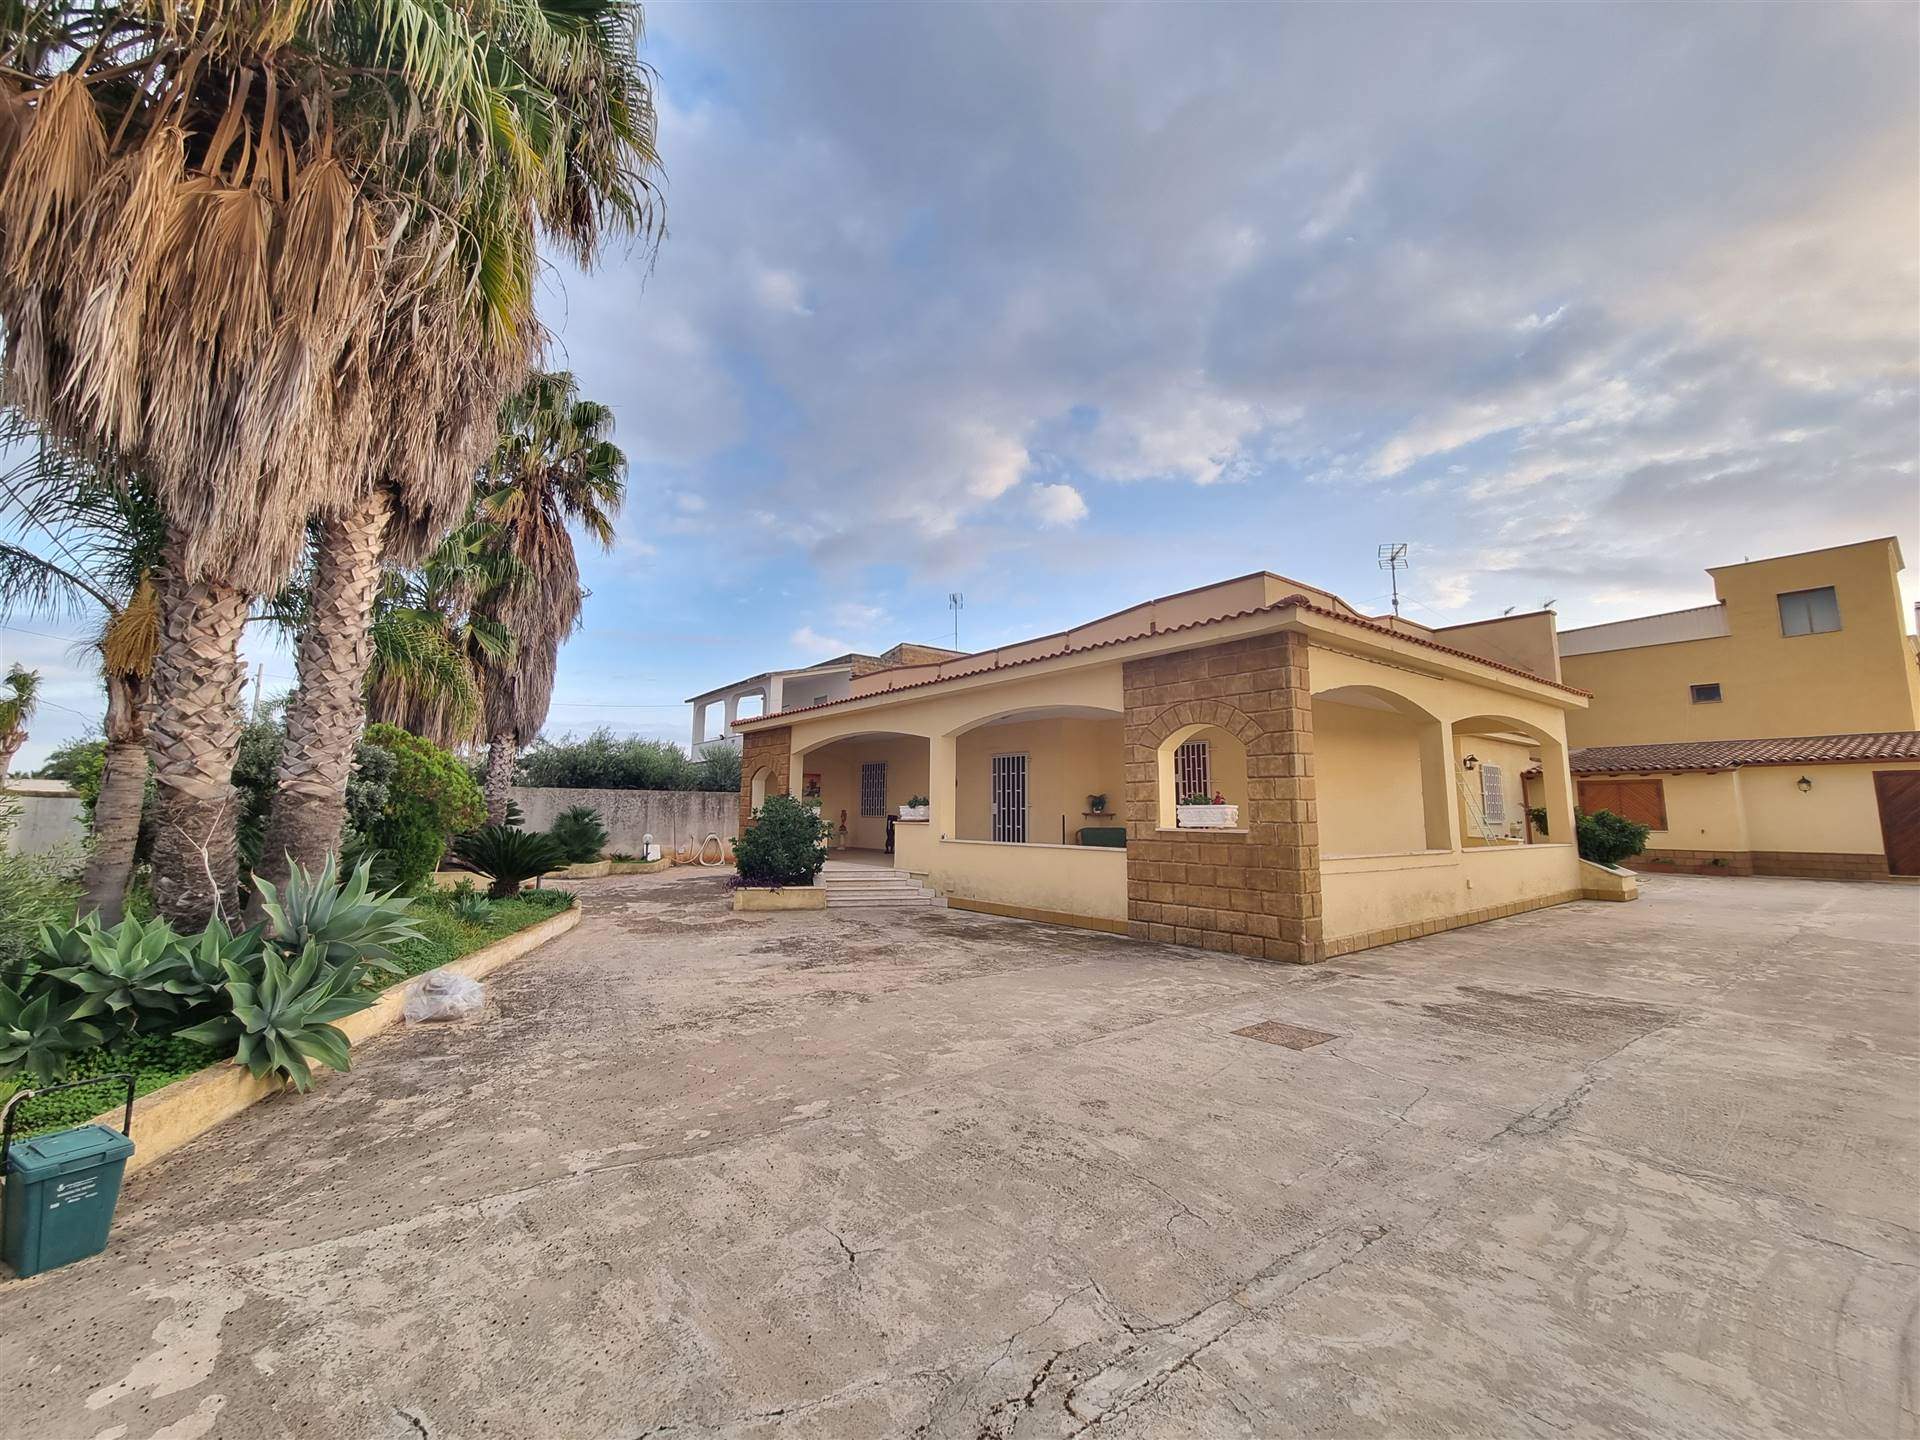 Villa in vendita a Mazara del Vallo, 5 locali, prezzo € 250.000 | PortaleAgenzieImmobiliari.it